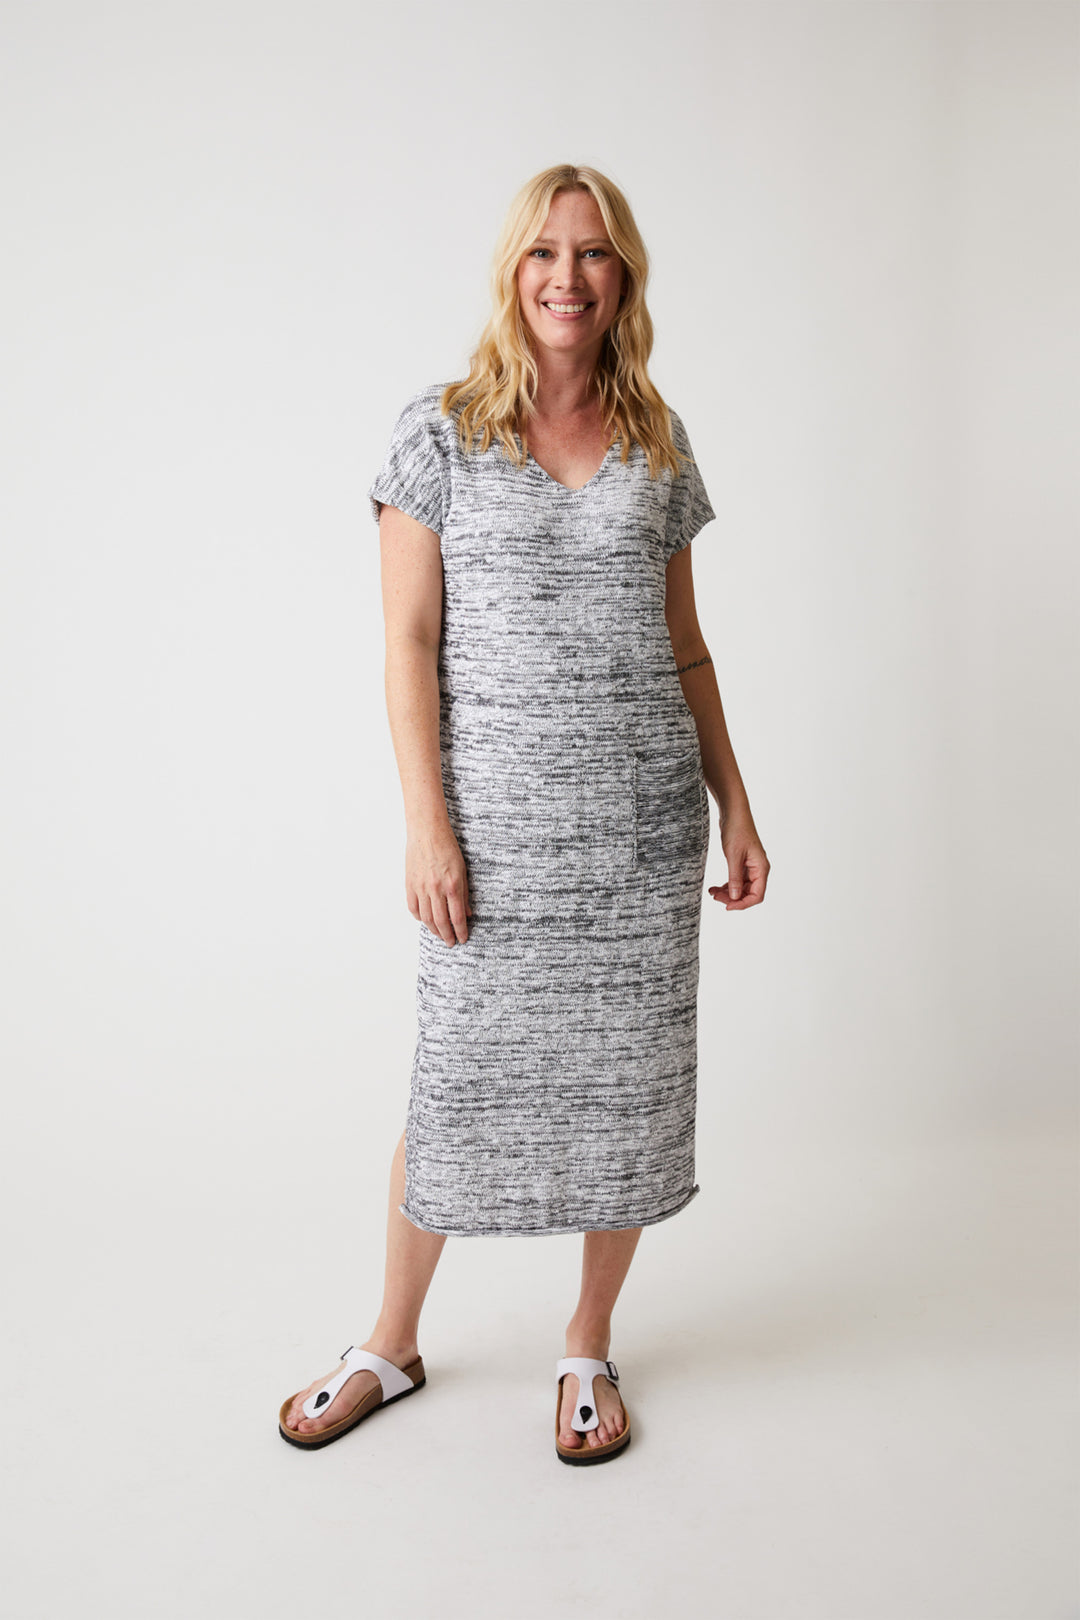 J. Jill Daisy Knee-length Dresses for Women